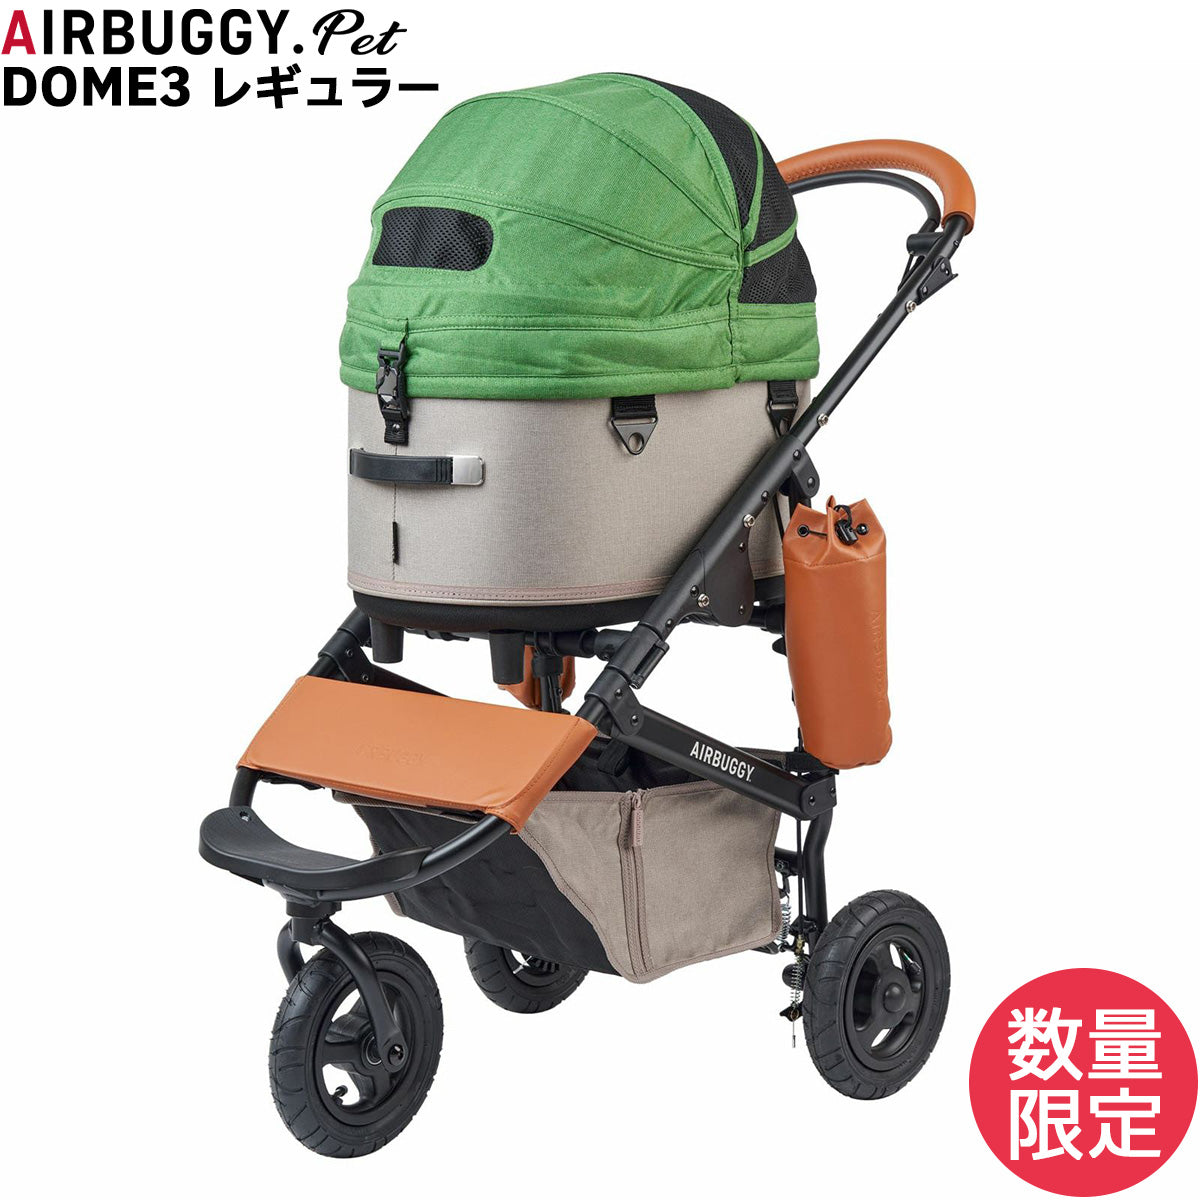 14,322円AirBuggy for Pet(エアバギーフォーペット)